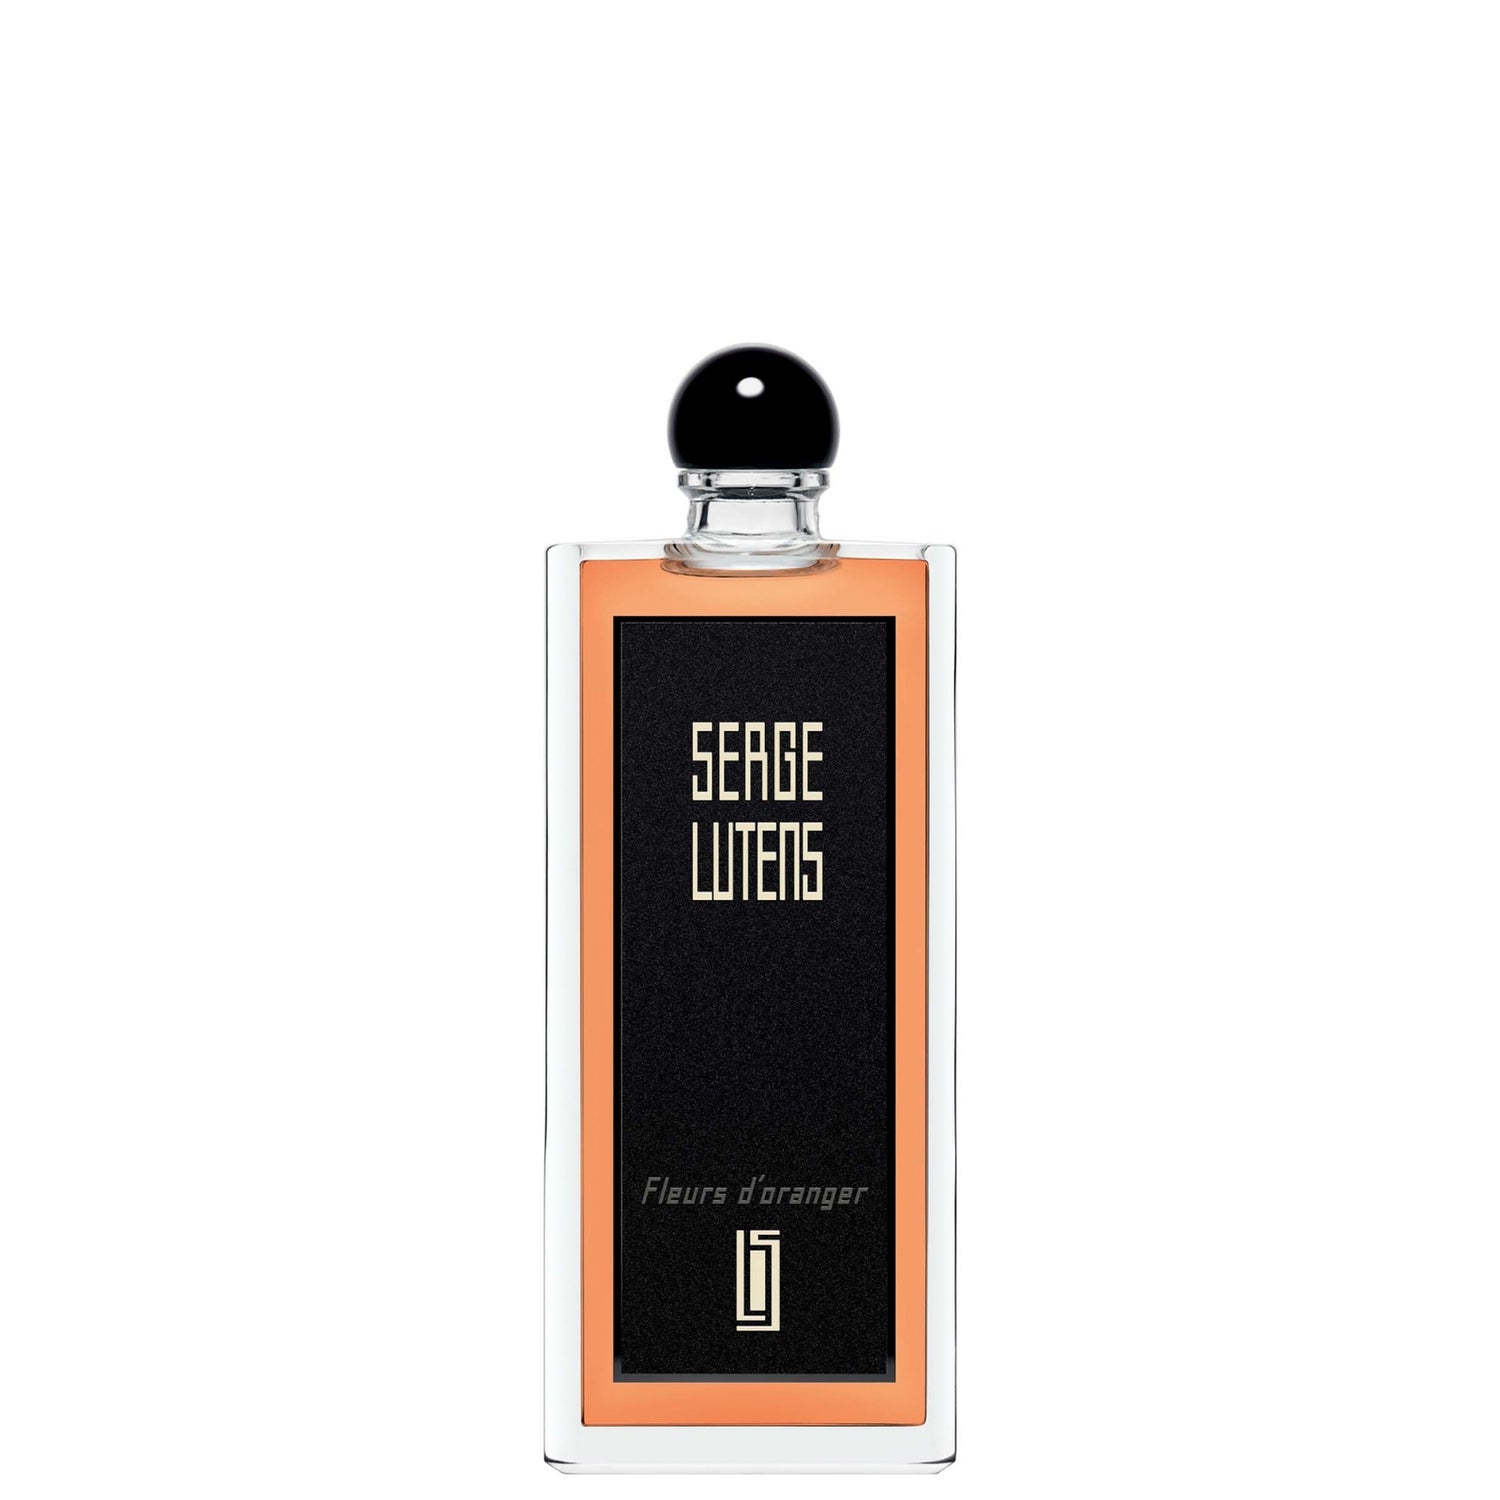 Serge Lutens Fleurs d'oranger Eau de Parfum - 100 ml